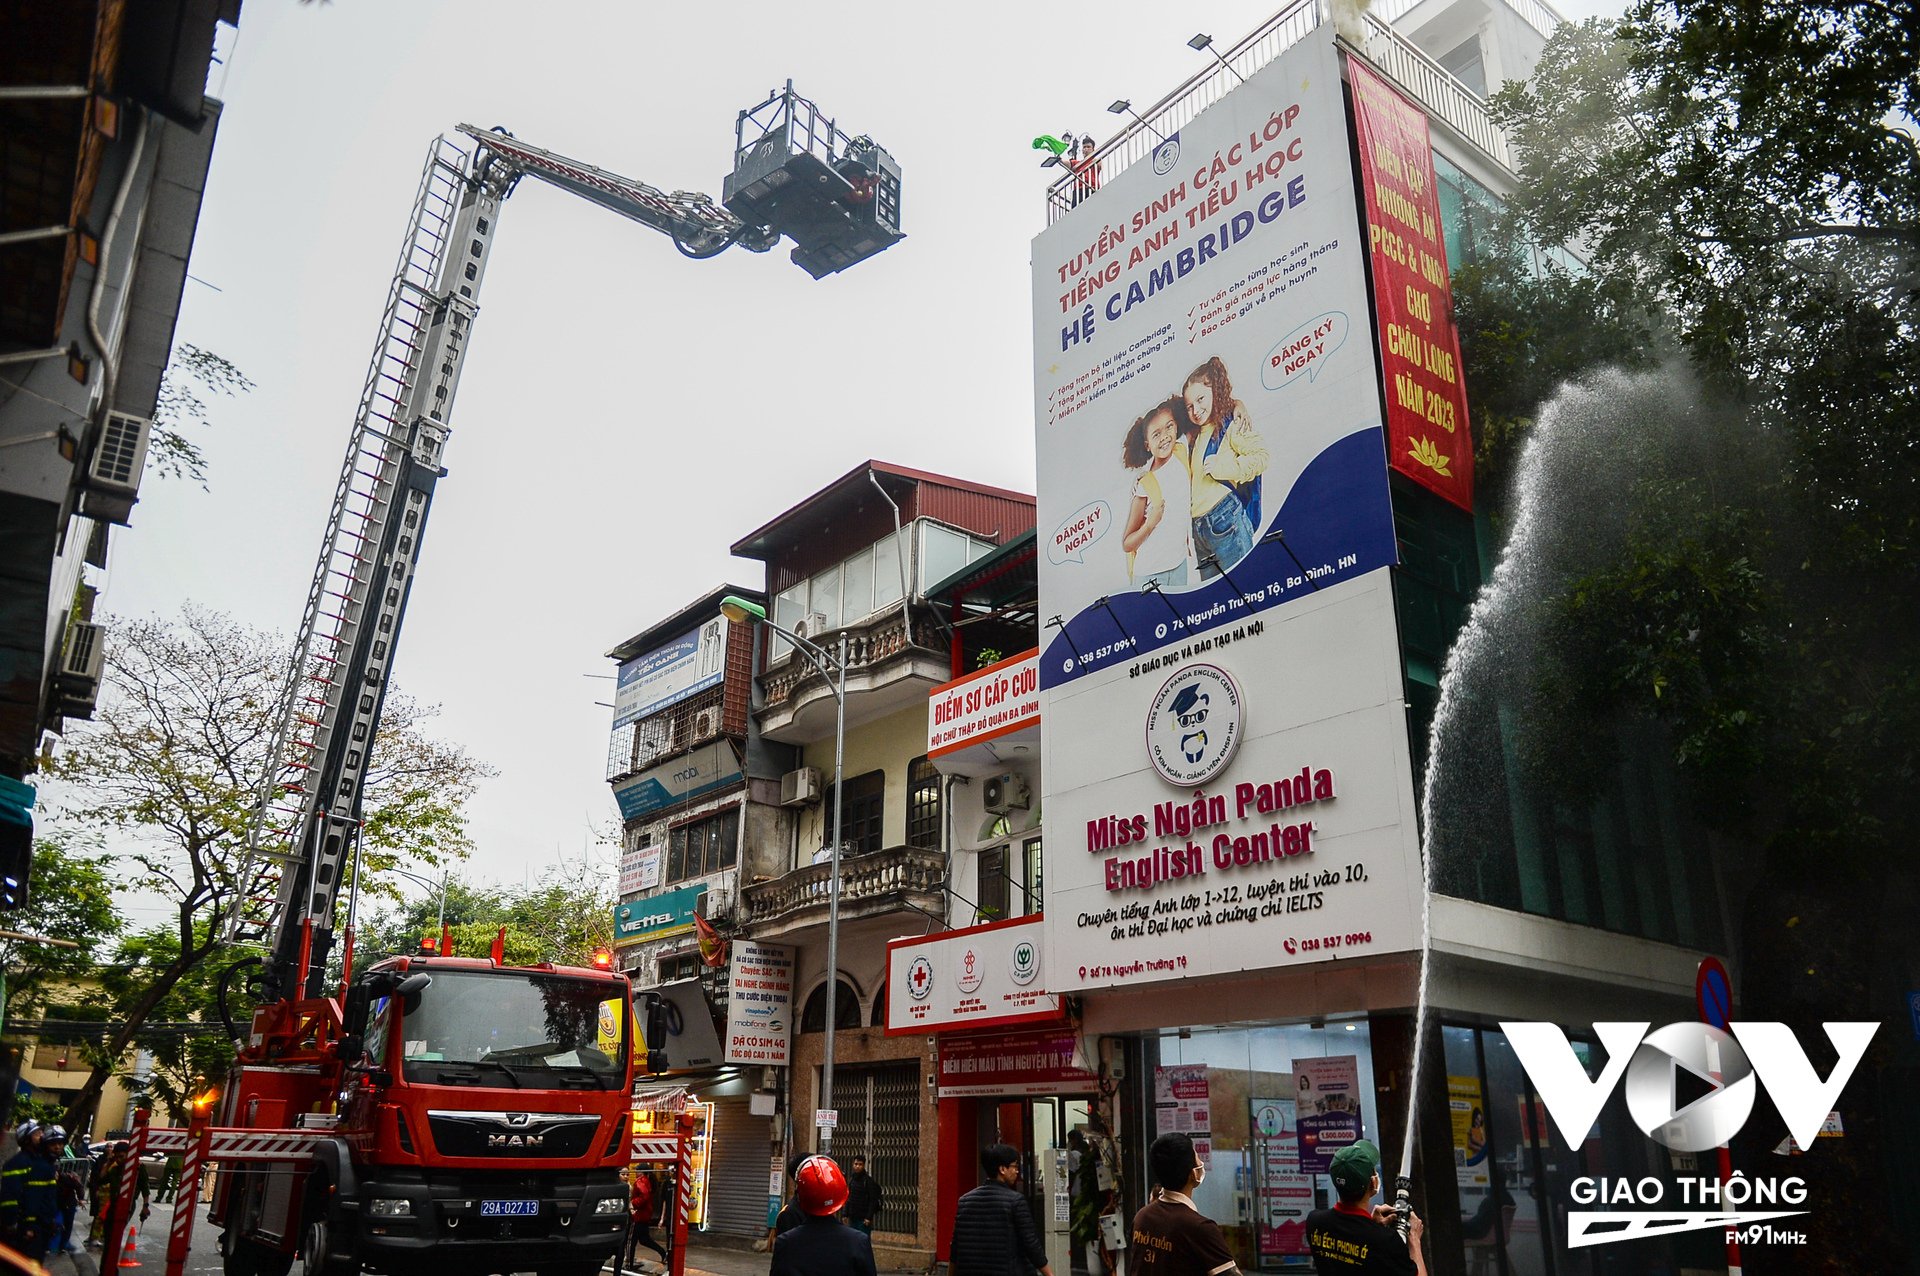 Lúc này lực lượng Cảnh sát Phòng cháy, chữa cháy và Cứu nạn, cứu hộ quận Ba Đình, Hà Nội đã có mặt. Lập tức triển khai phương tiện, con người xử lý đám cháy. Xe thang được nâng lên nhà 4 tầng để cứu nạn.